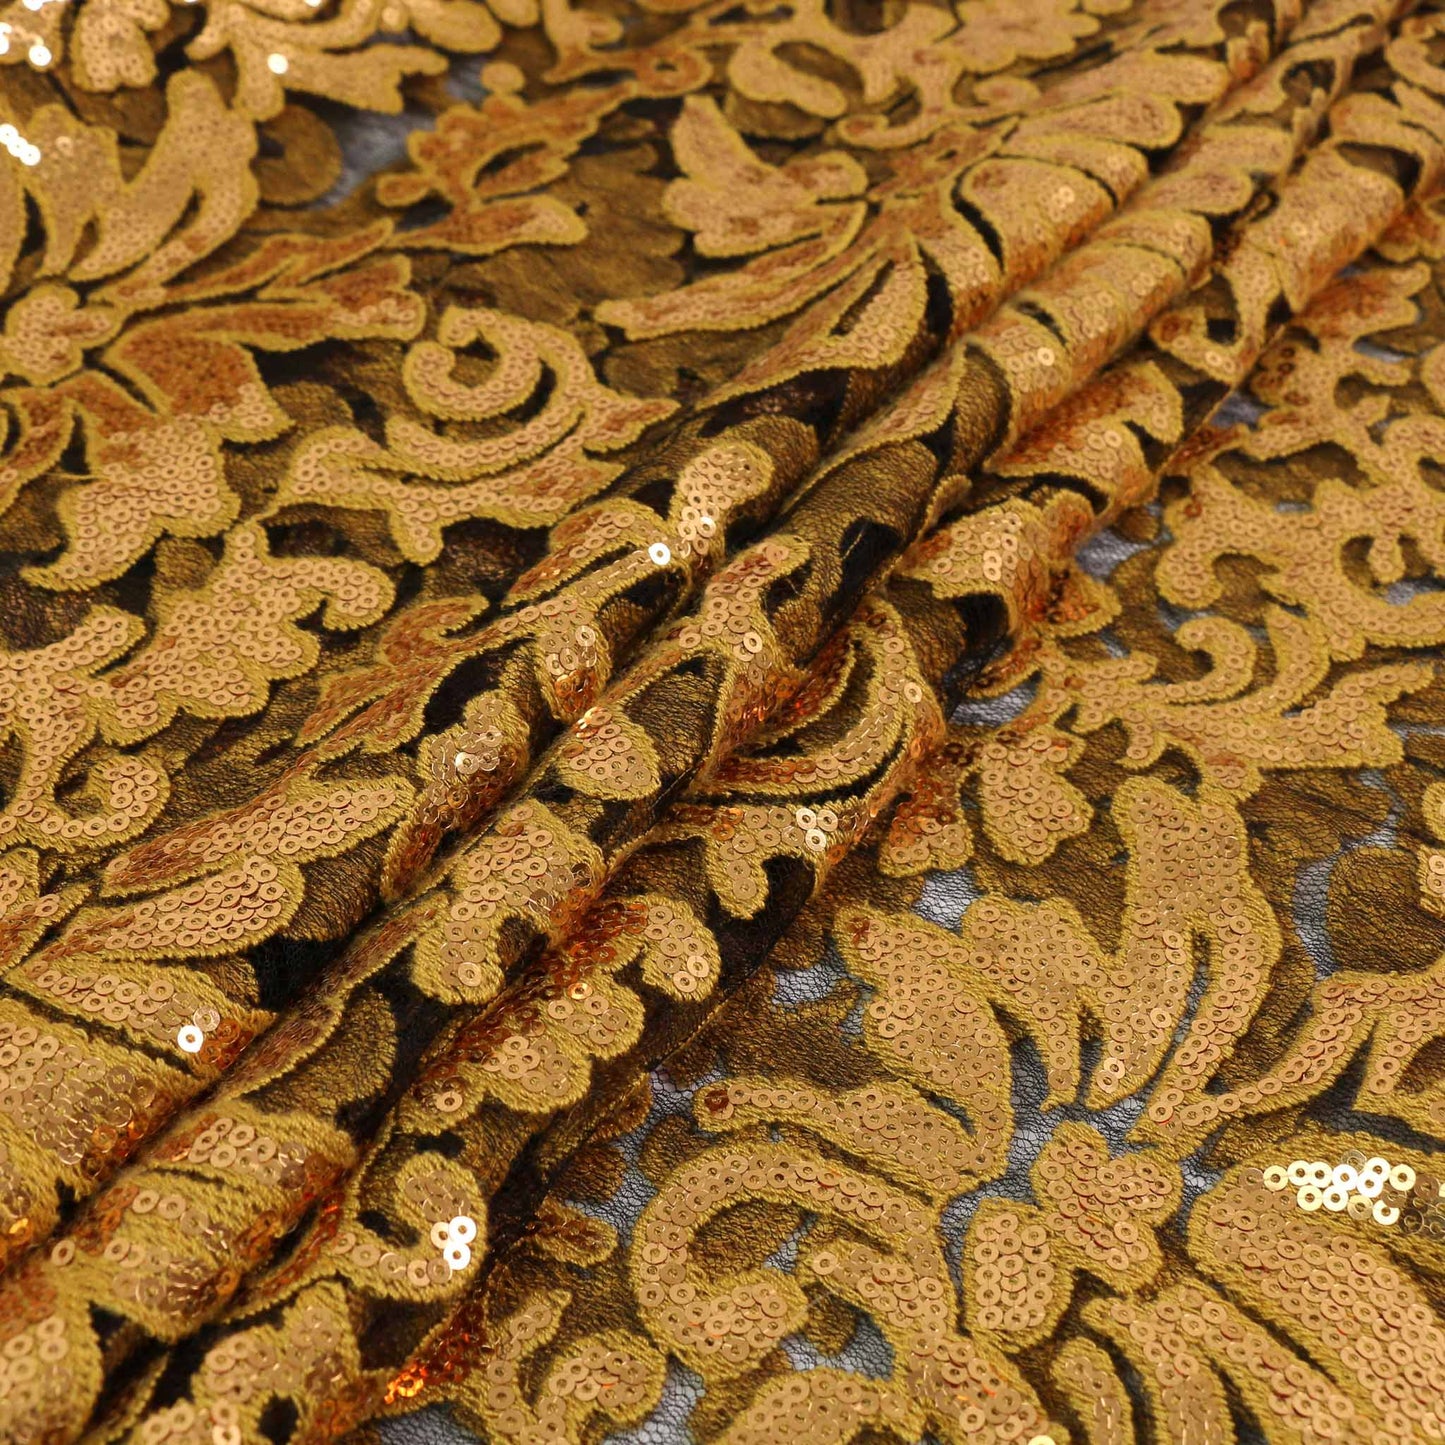 Sequin Fabric - Gold, Black